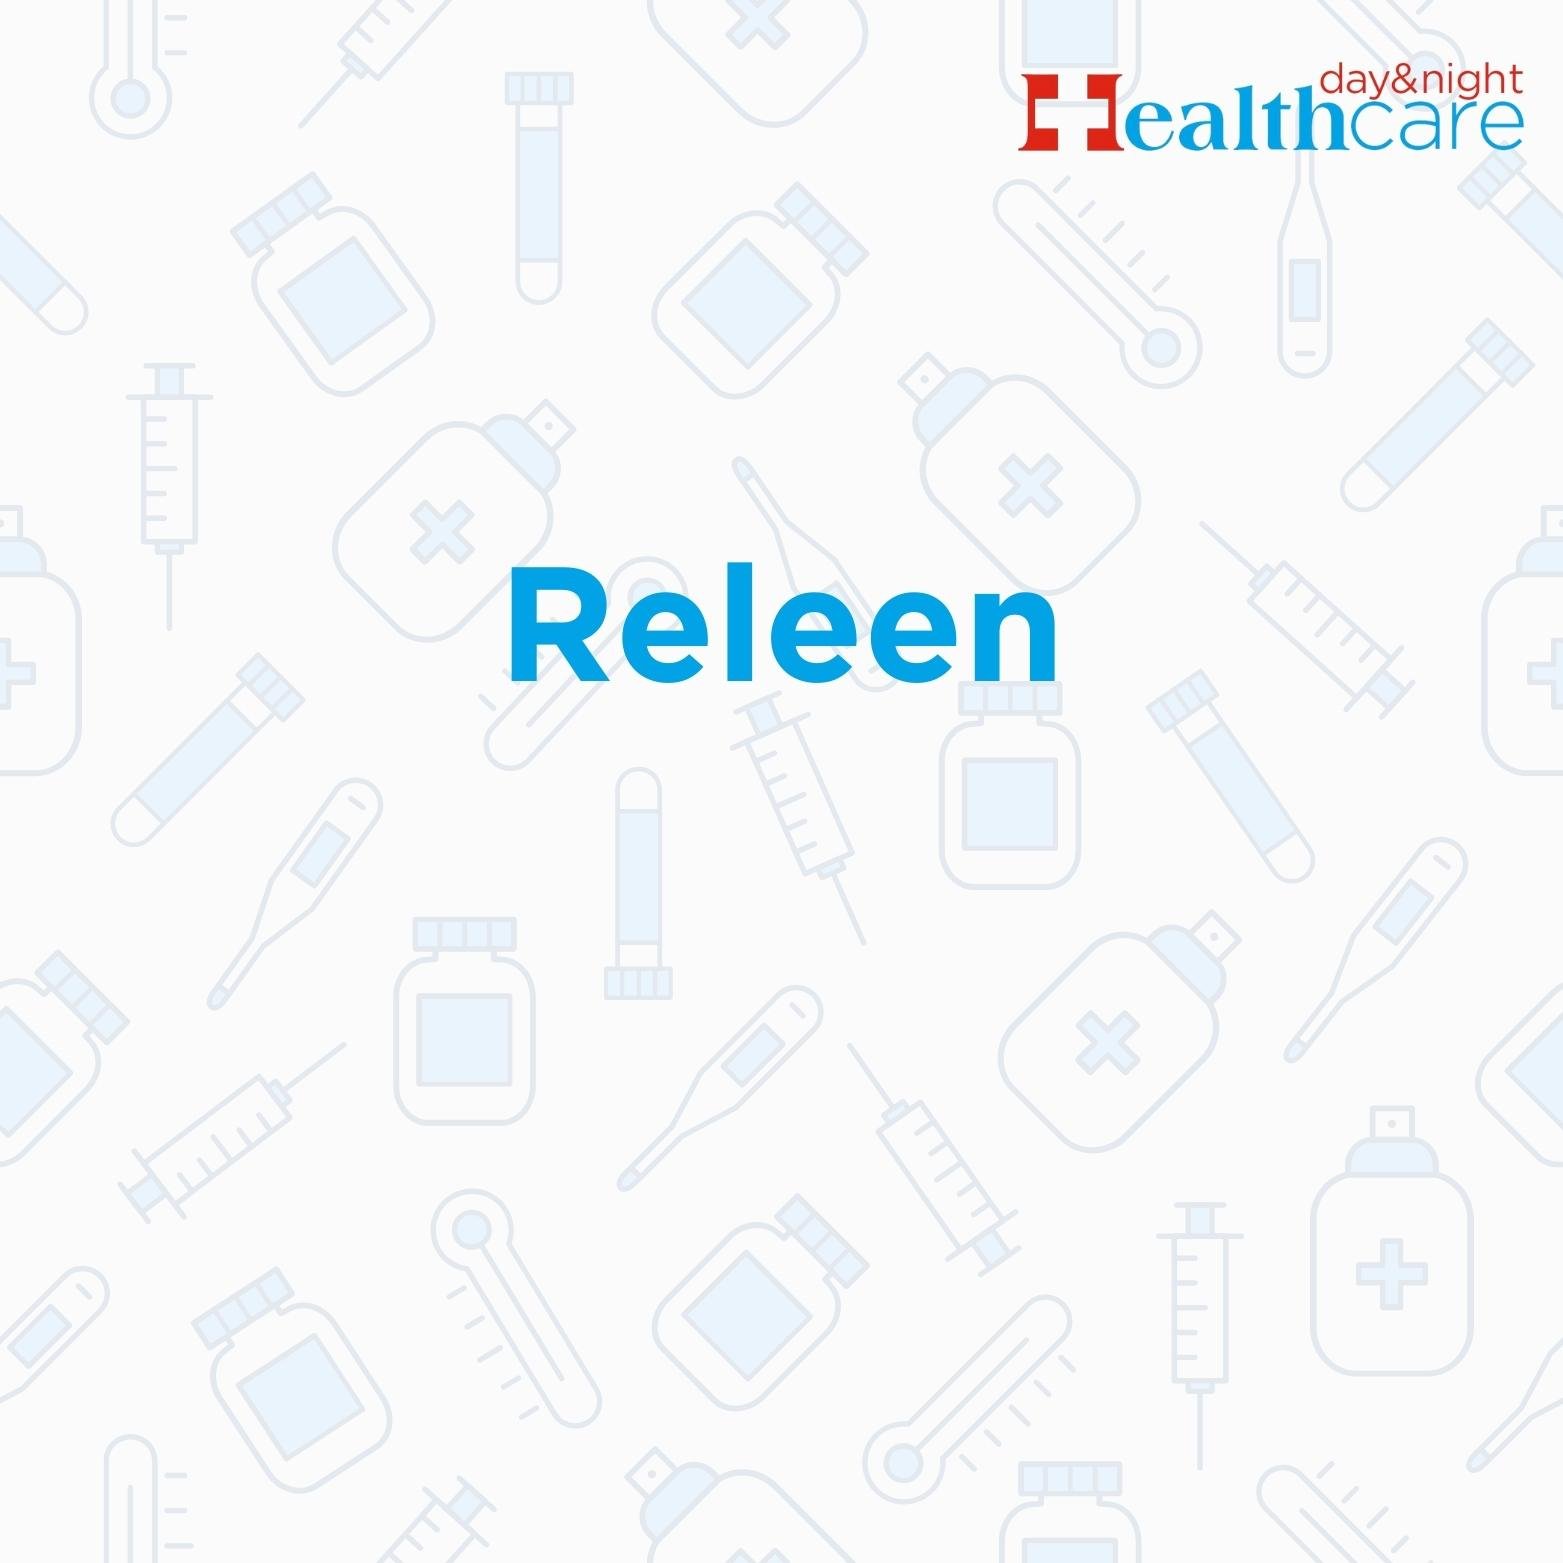 Releen Catheters